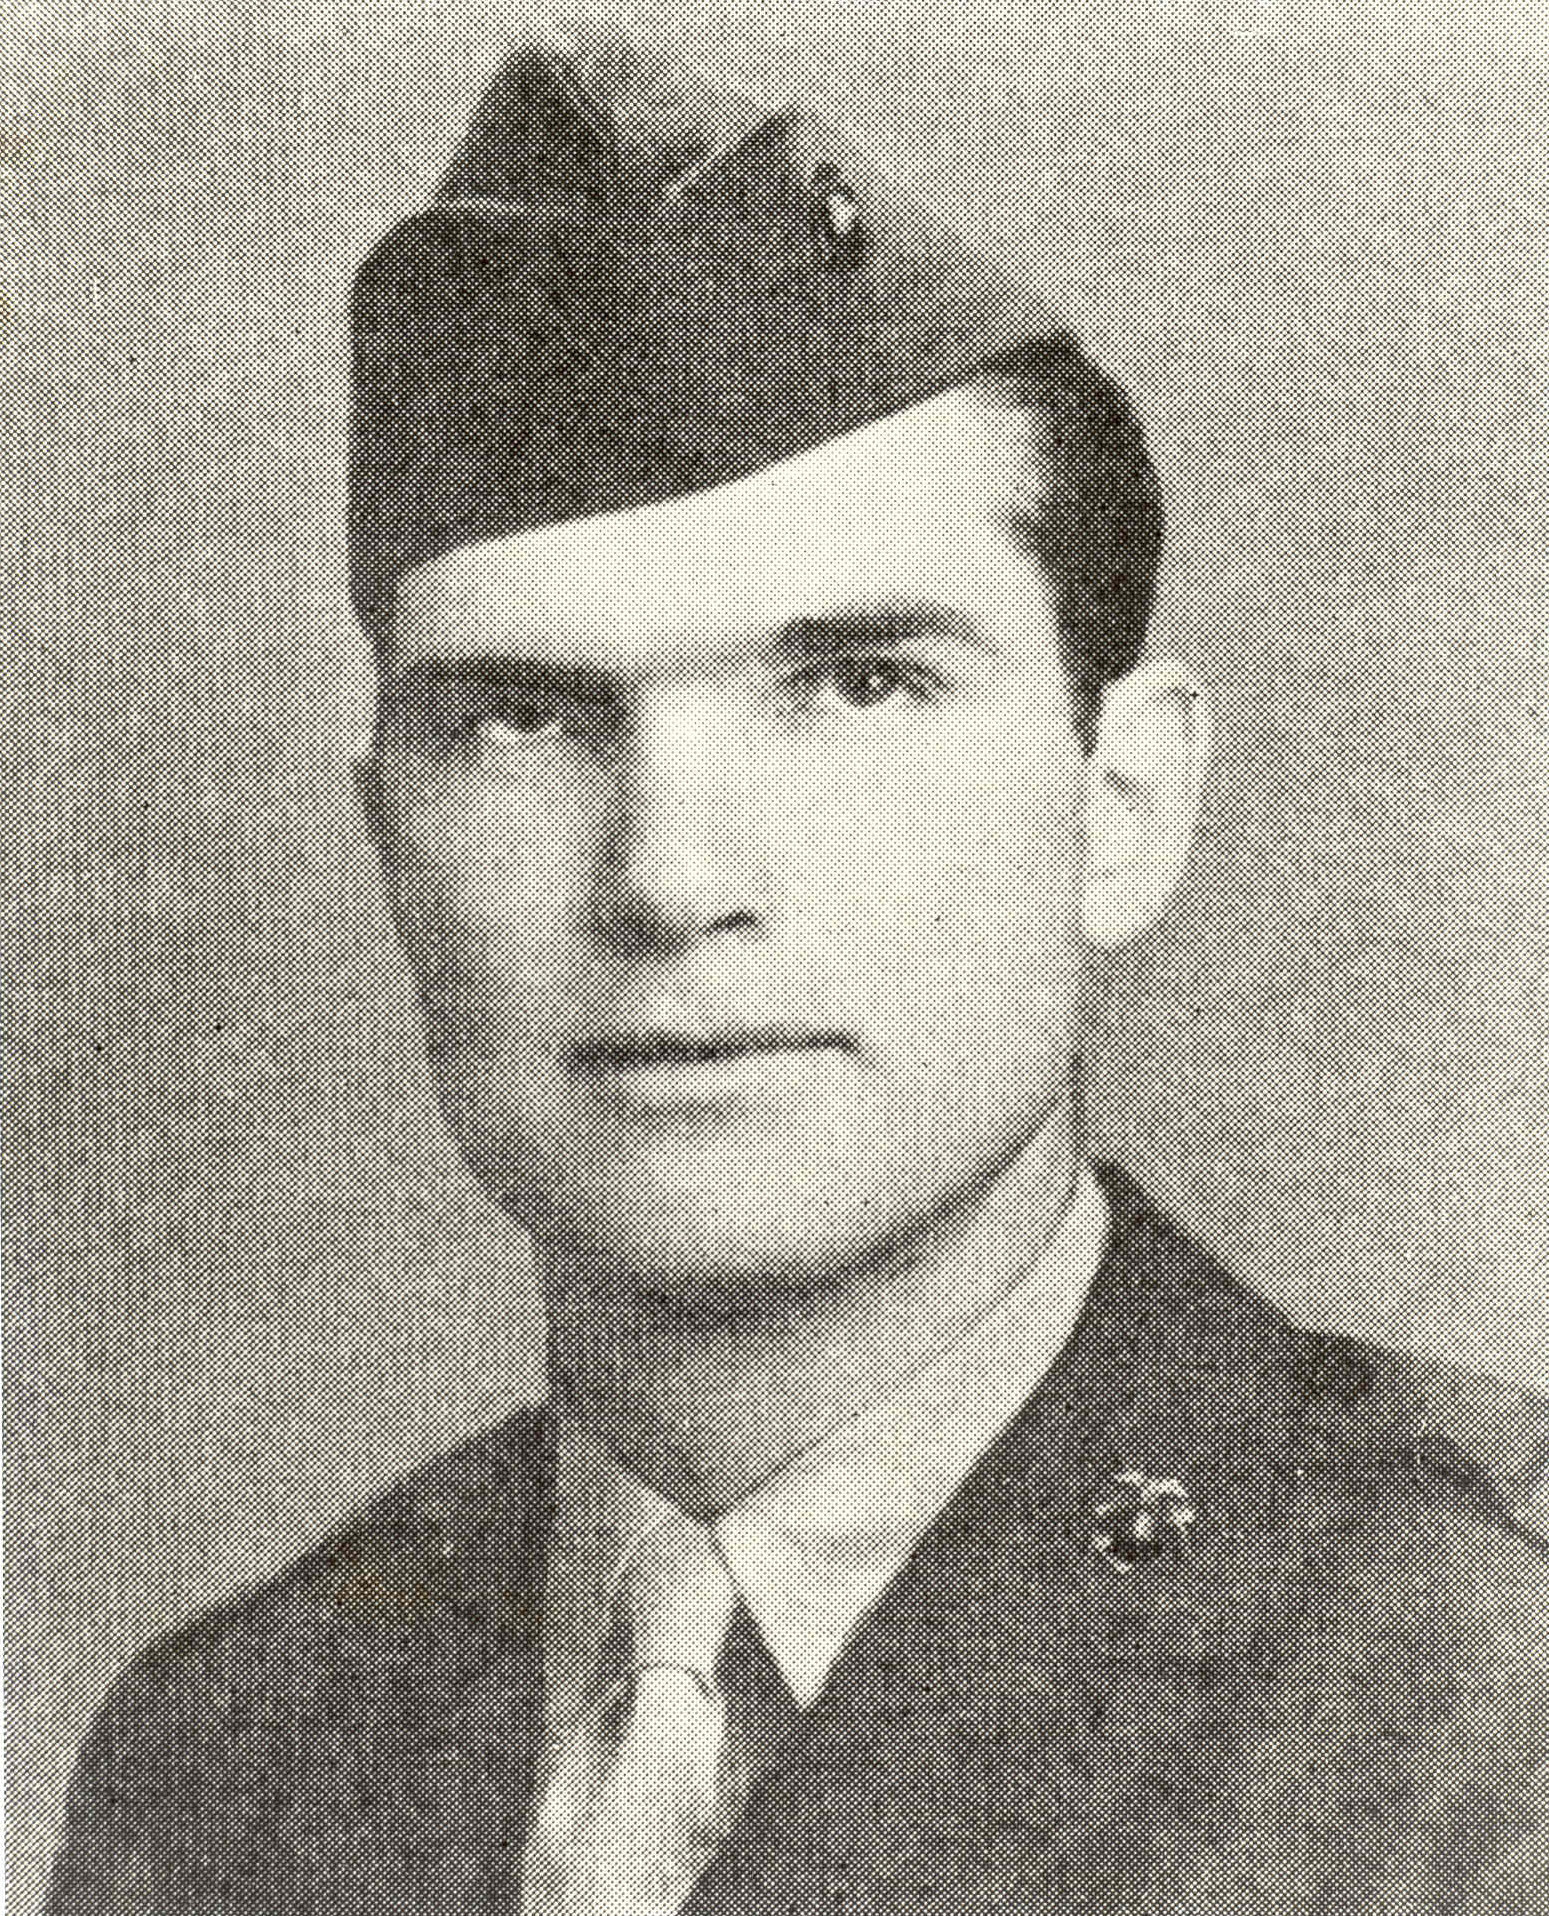 Medal of Honor Recipient William D. Halyburton Jr.